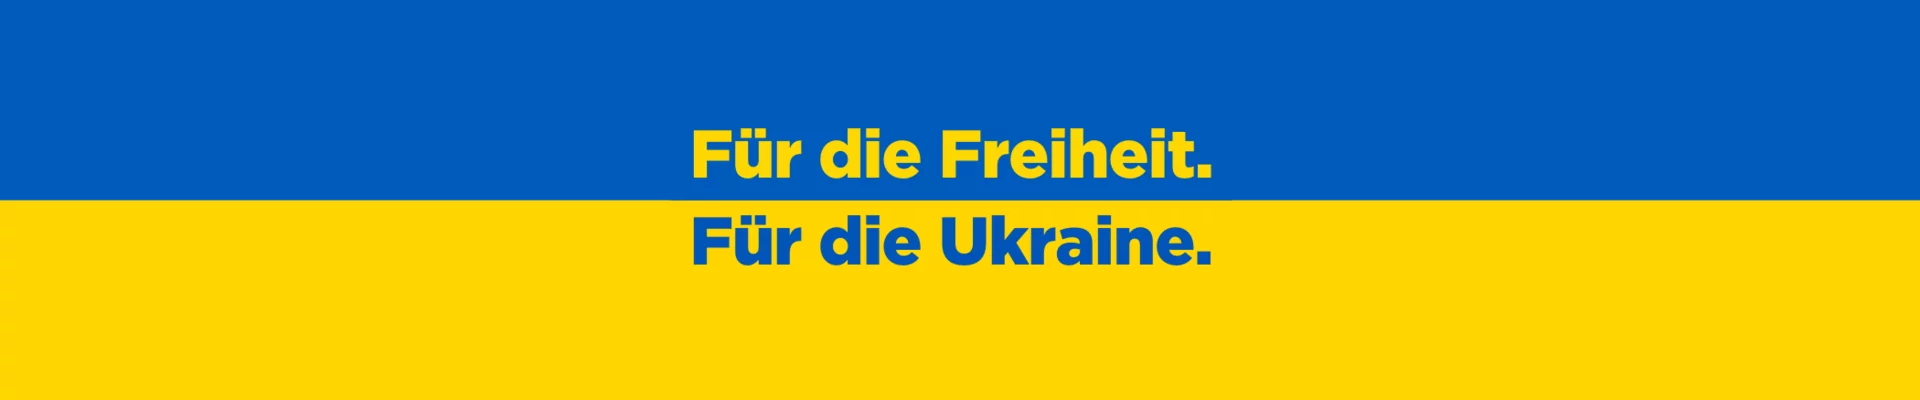 Für die Freiheit. Für die Ukraine.